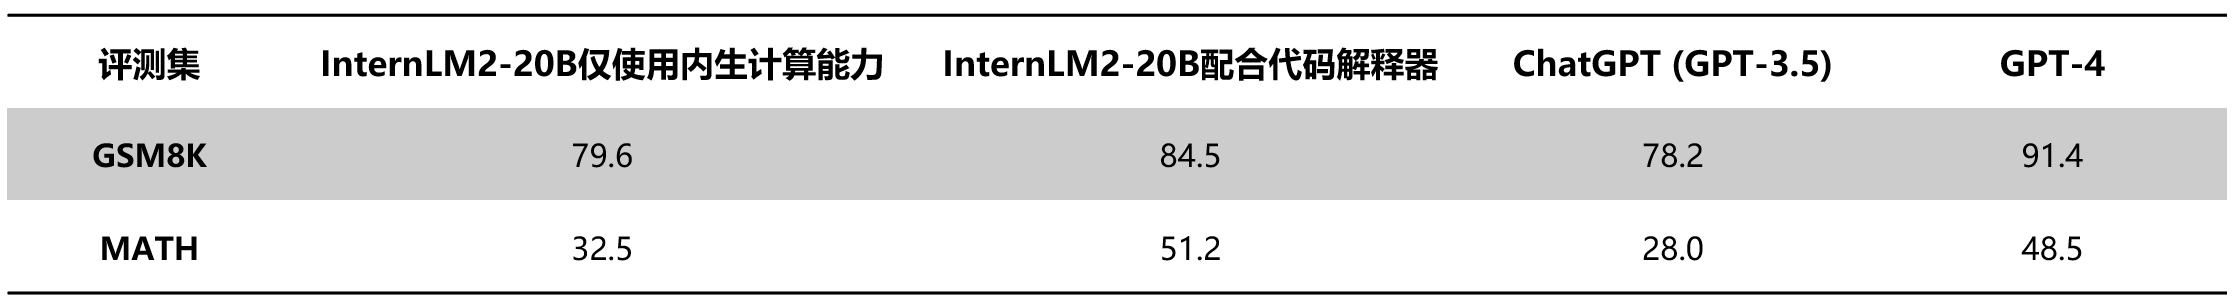 图13 InternLM2与ChatGPT的数学能力评测结果对比.png